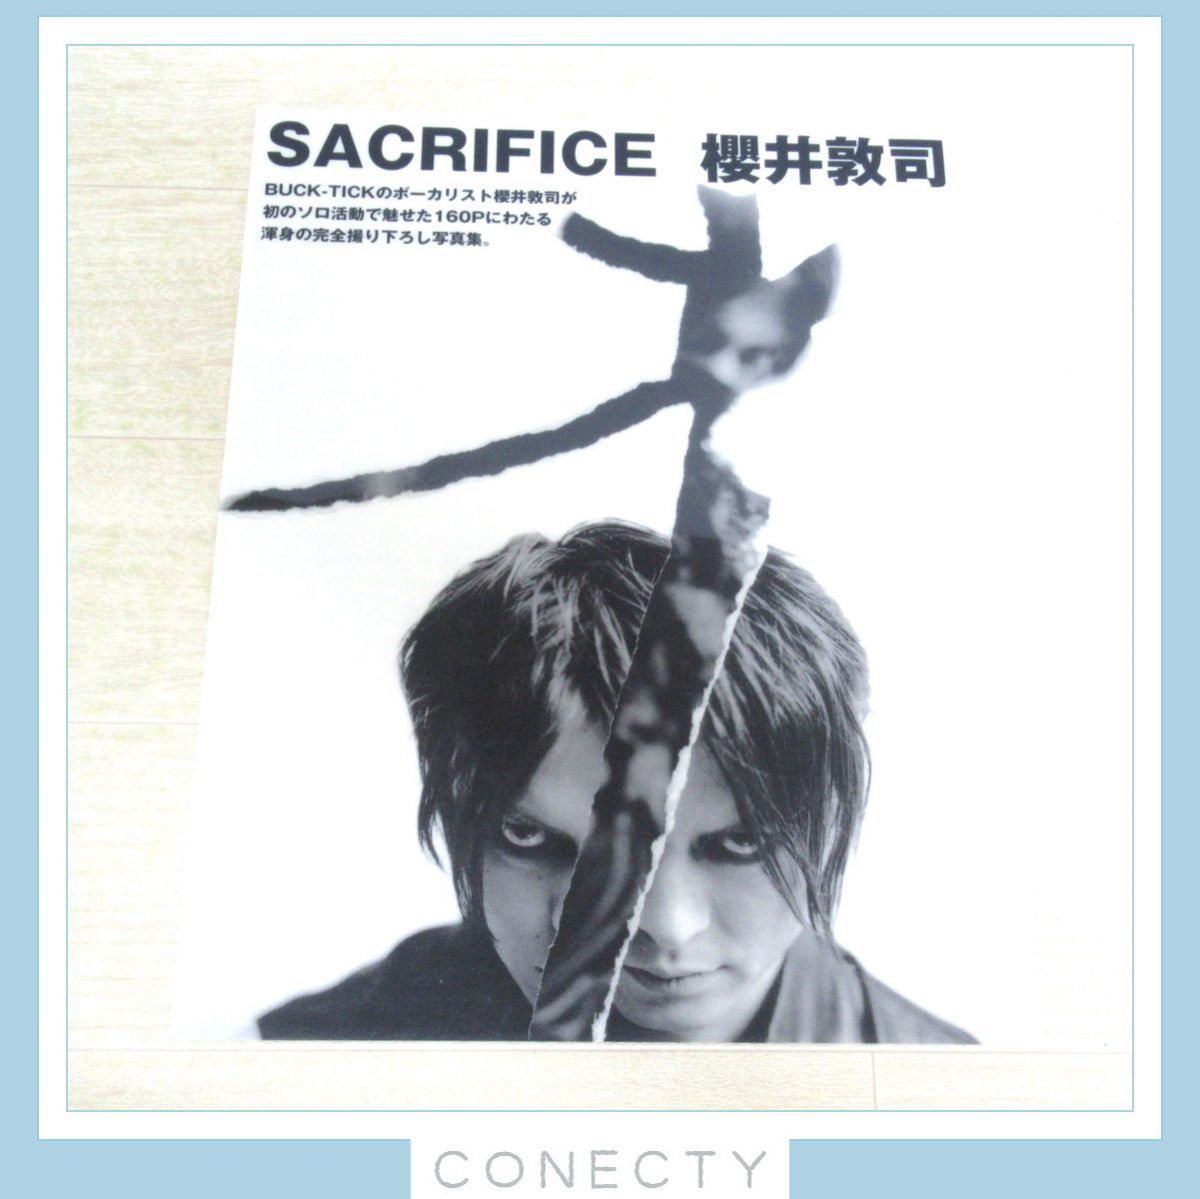 櫻井敦司 (バクチク)「Sacrifice photo & frame」 - 本